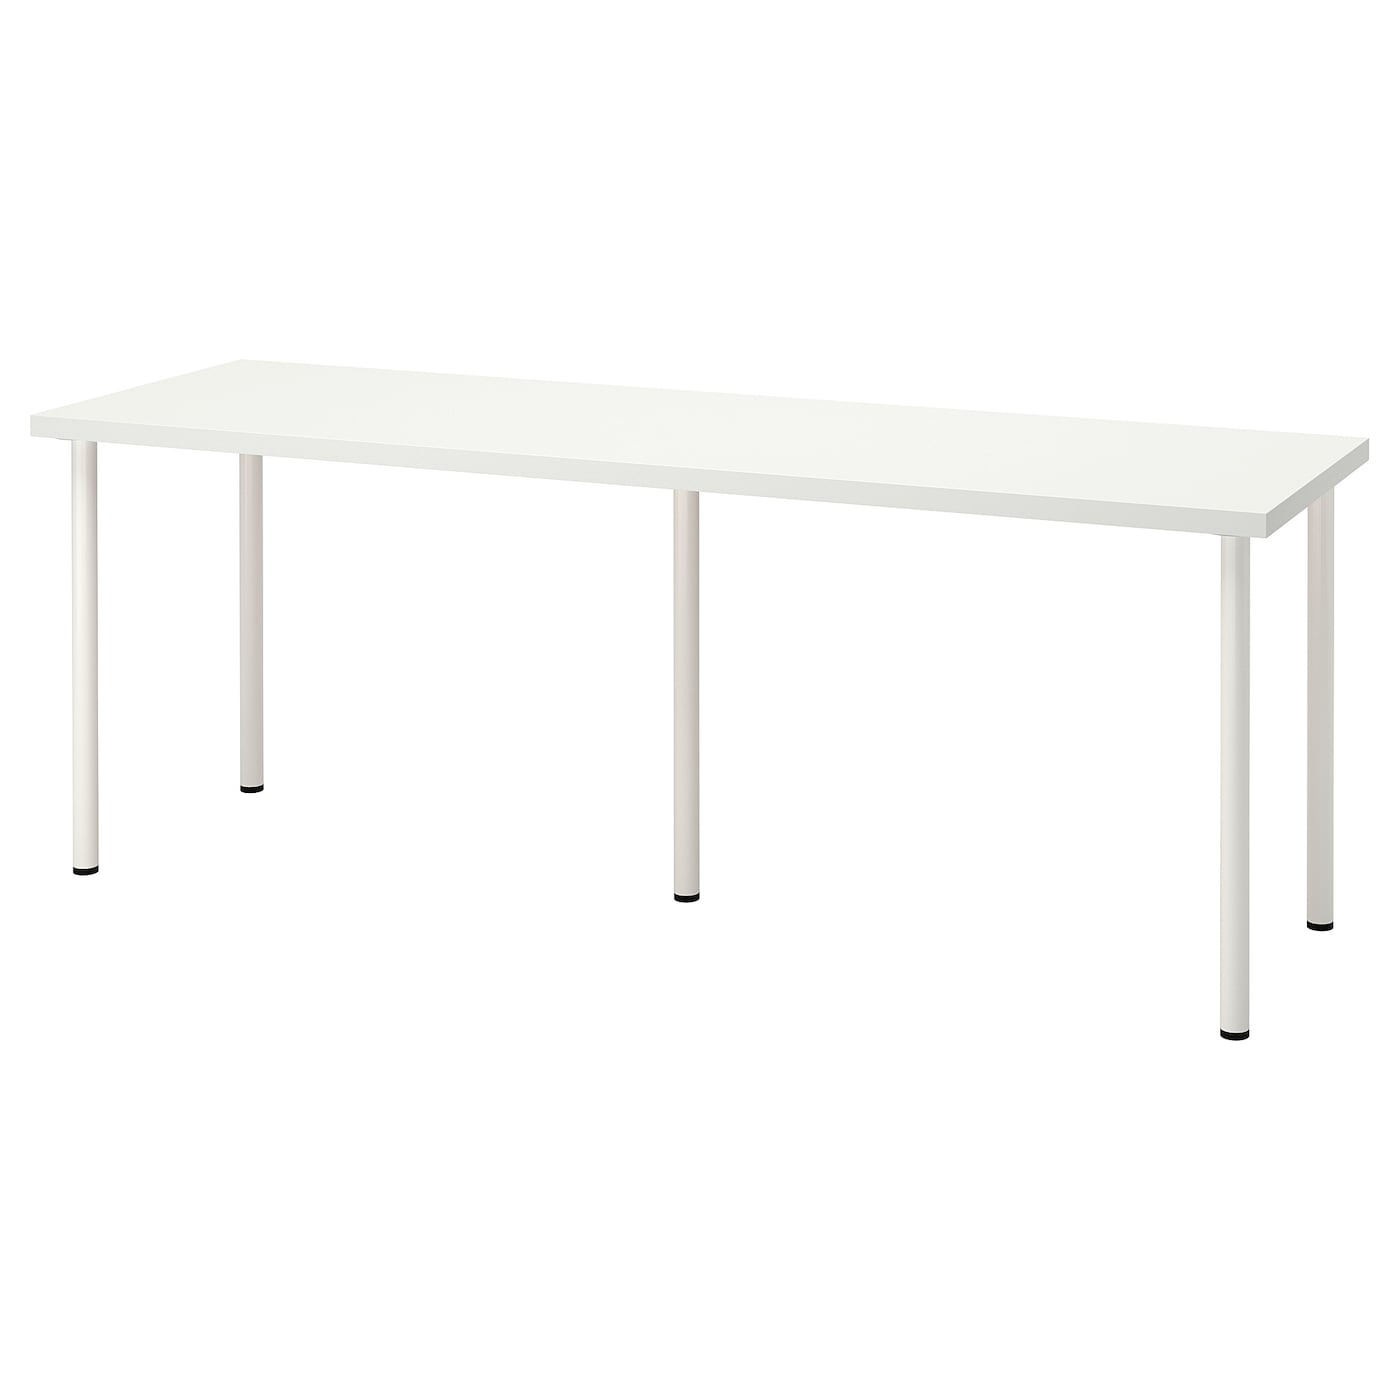 Письменный стол - IKEA LAGKAPTEN/ADILS, 200х60 см, белый, ЛАГКАПТЕН/АДИЛЬС ИКЕА